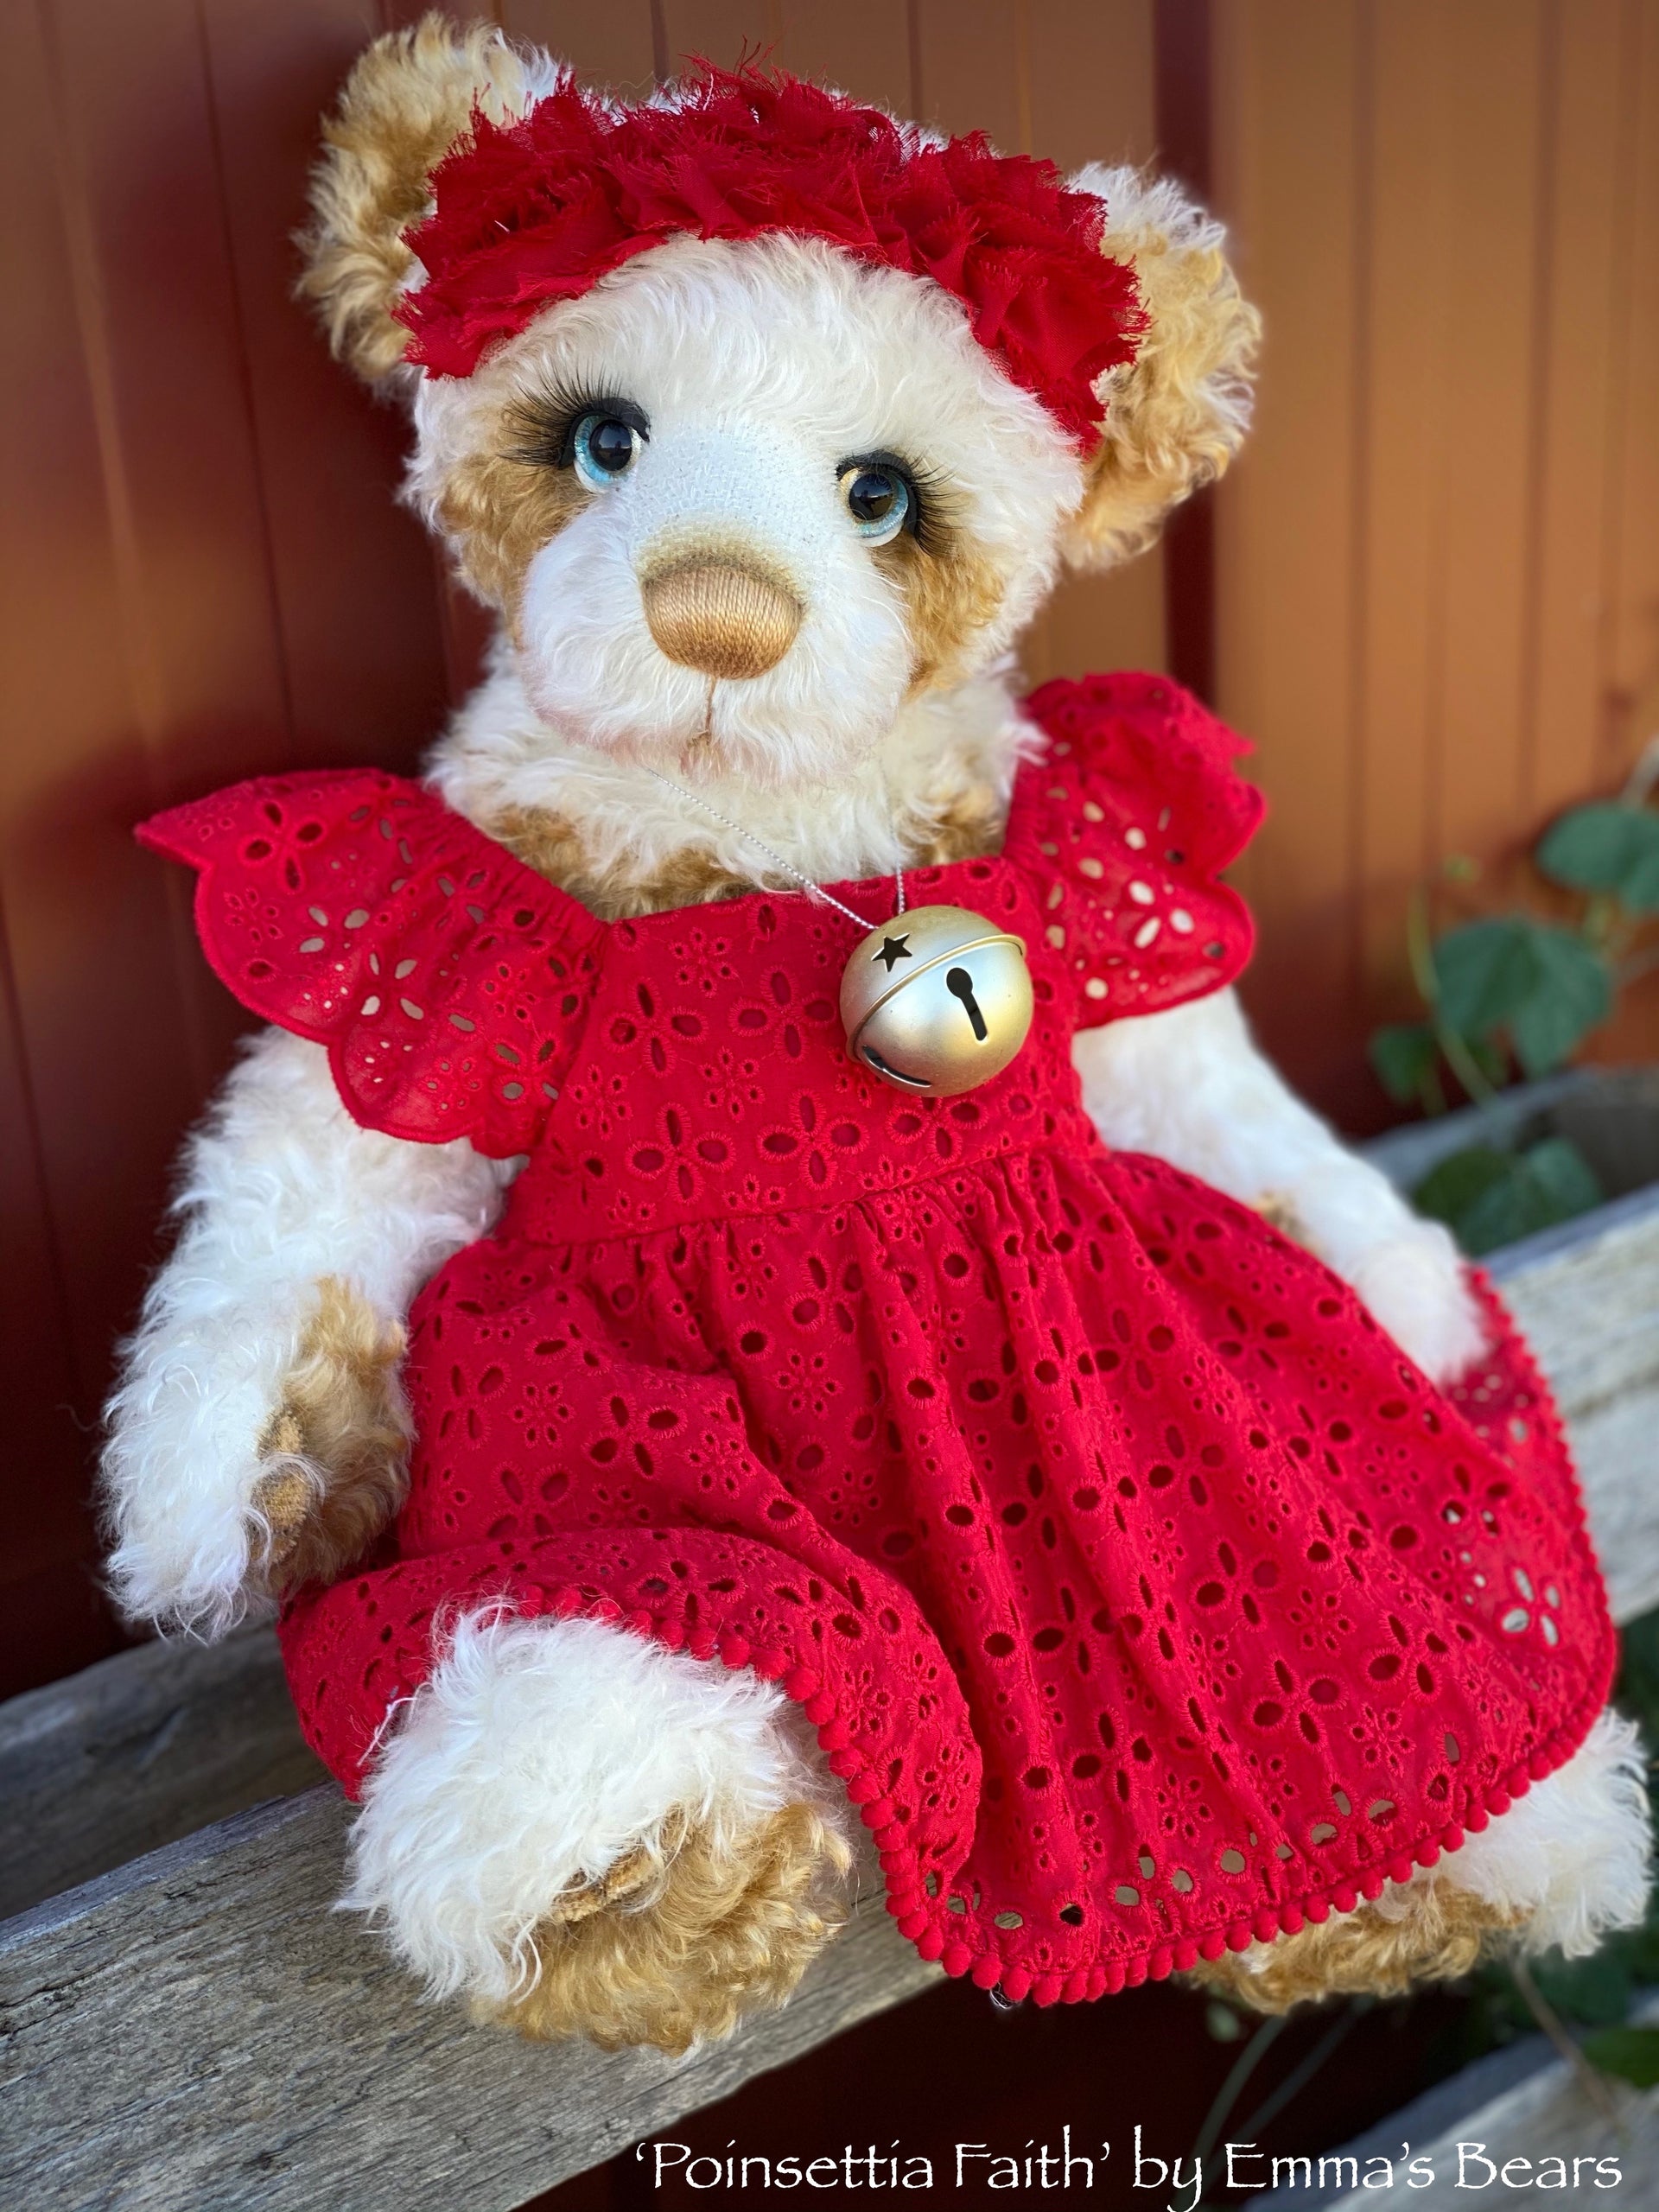 Poinsettia Faith - 18" Christmas 2020 MOHAIR Artist toddler style Bear by Emma's Bears - OOAK